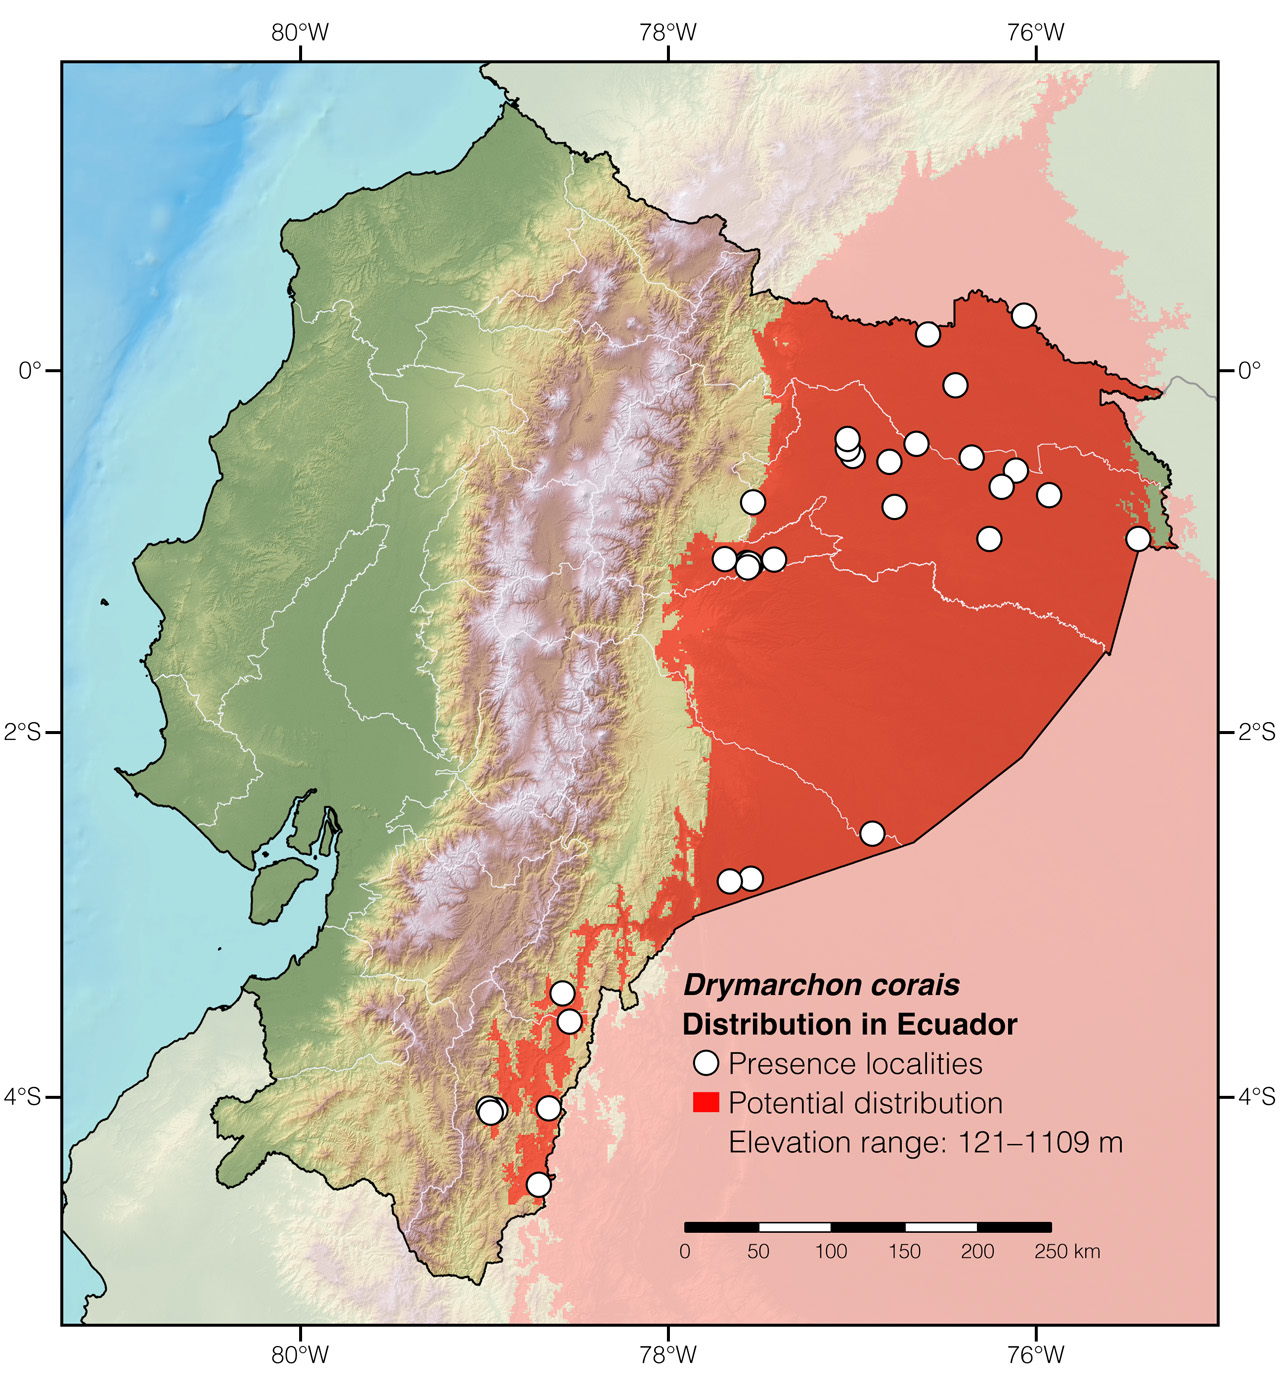 Distribution of Drymarchon corais in Ecuador